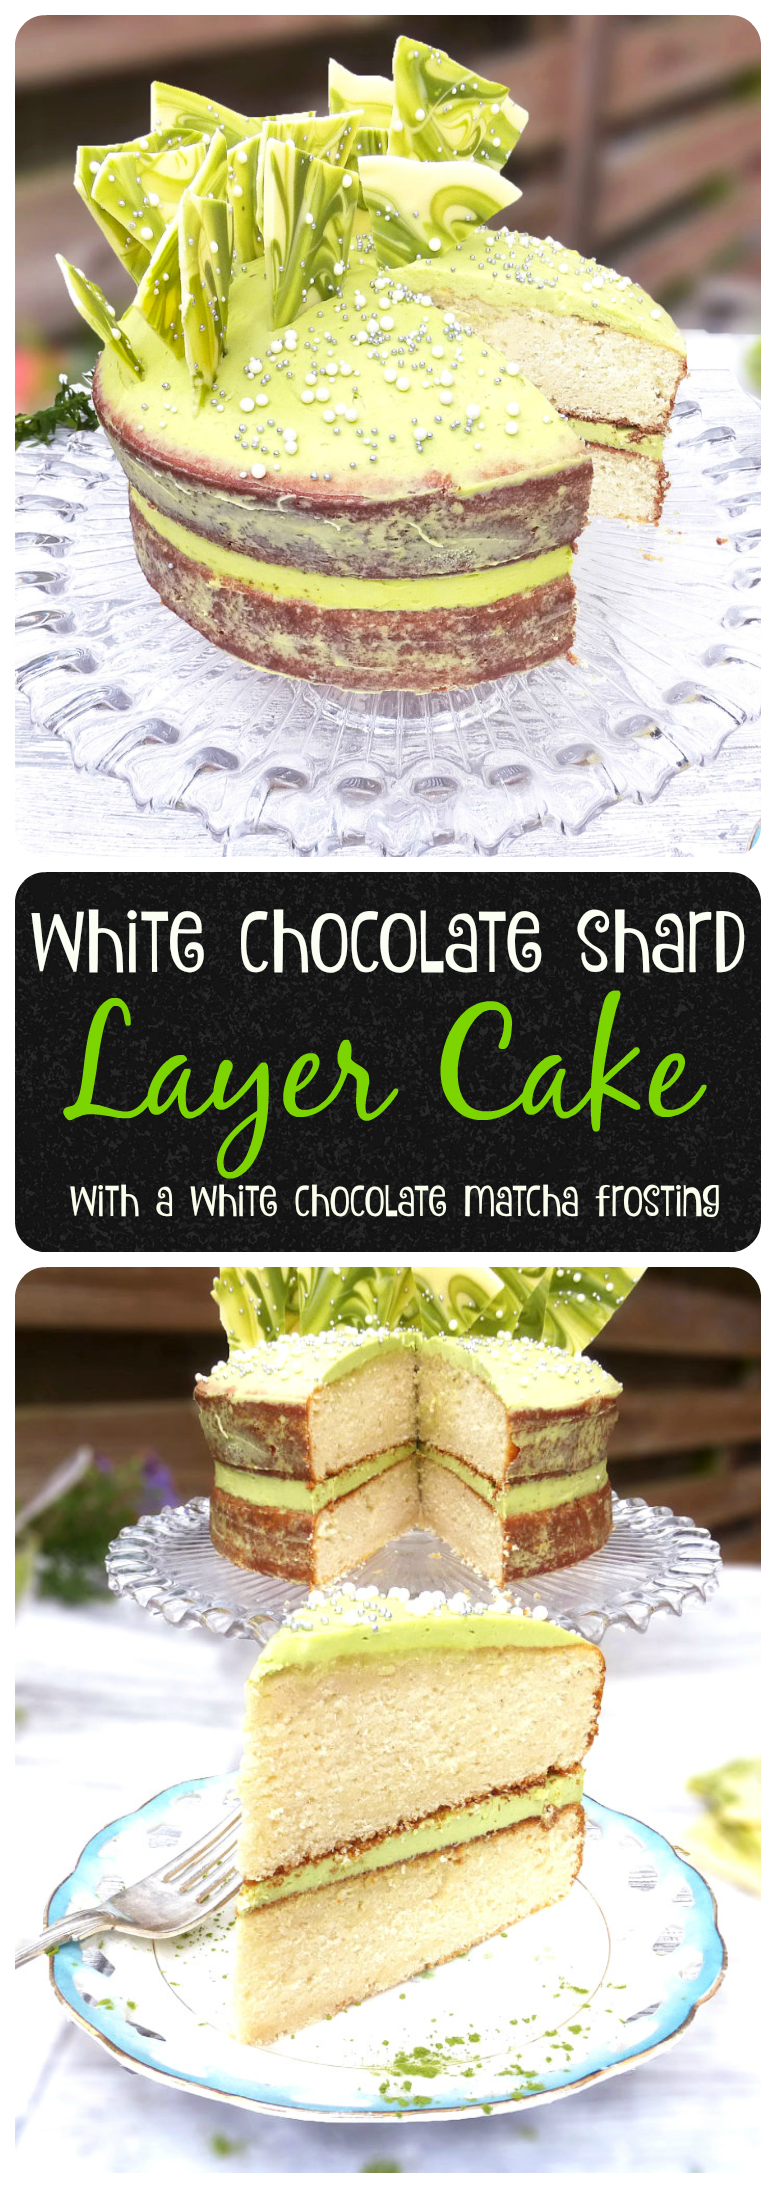 White Chocolate & Matcha Cake with Matcha & White Chocolate Shards